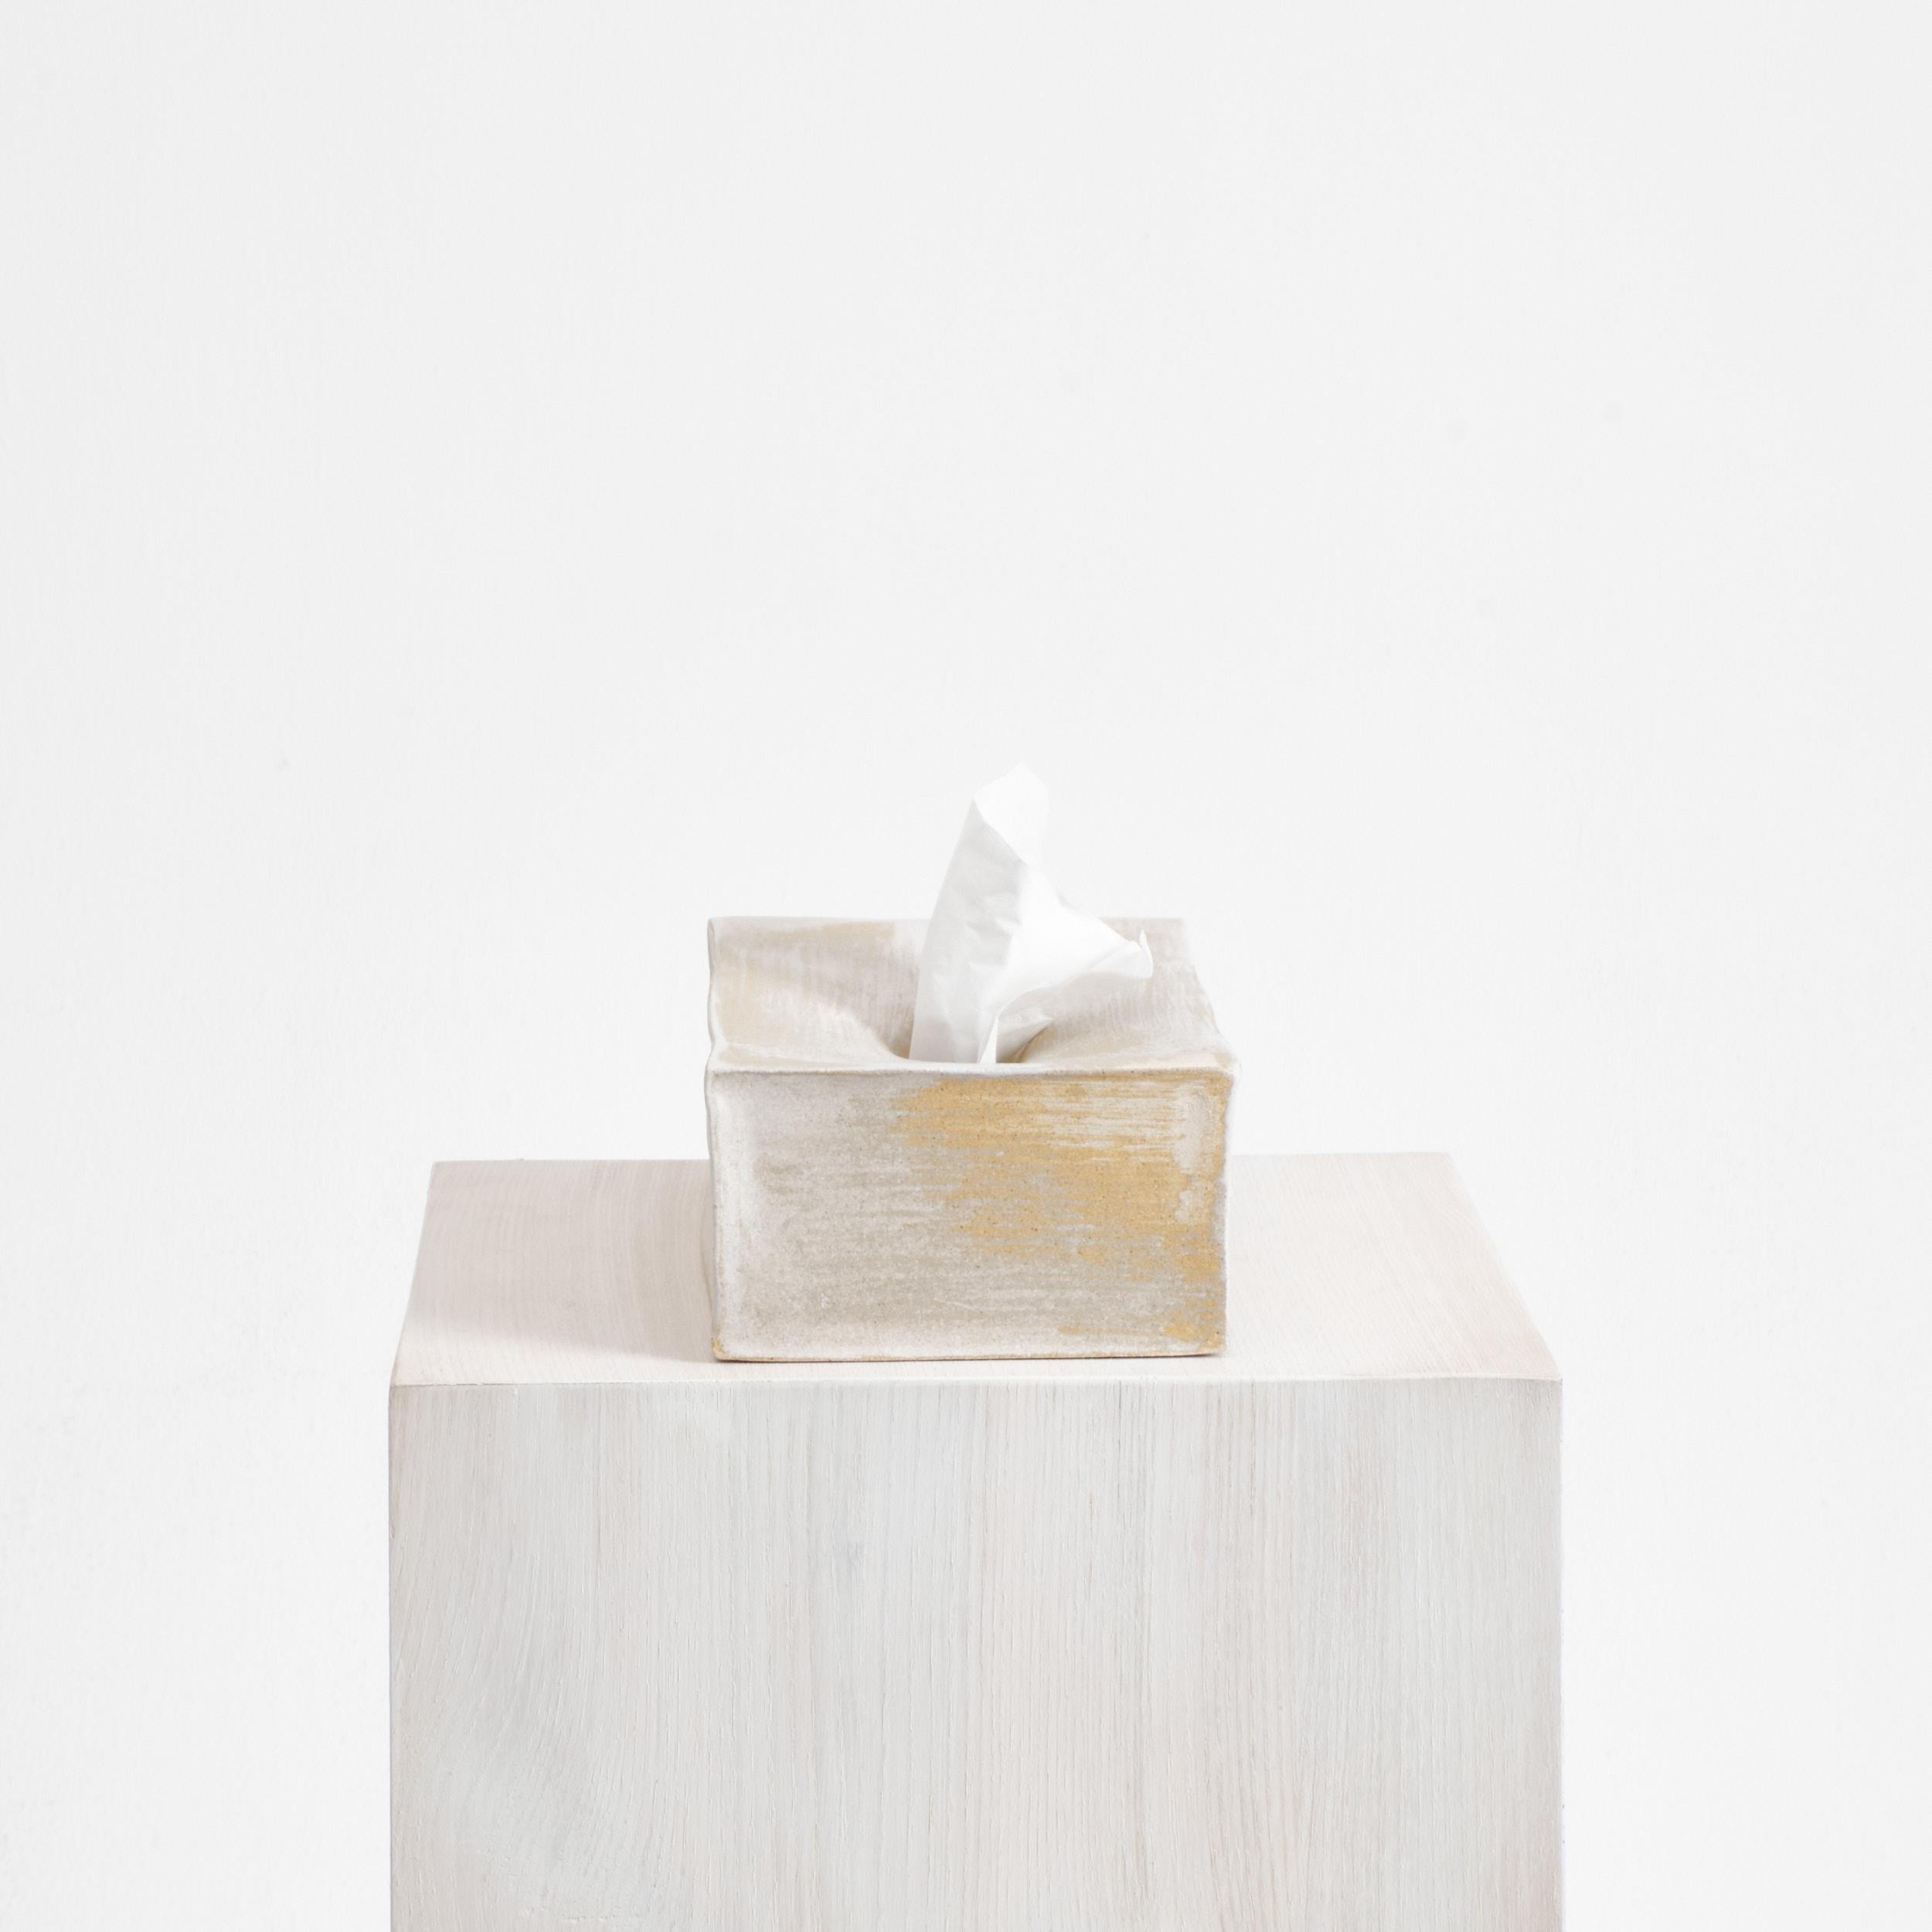 Keramische Tissue-Box in gebürstetem Weiß
Entworfen von Projekt 213A im Jahr 2023

Eine handwerklich hergestellte Tissue-Box aus Keramik, die in der eigenen Keramikwerkstatt von project 213A von erfahrenen Handwerkern hergestellt wird.
Die